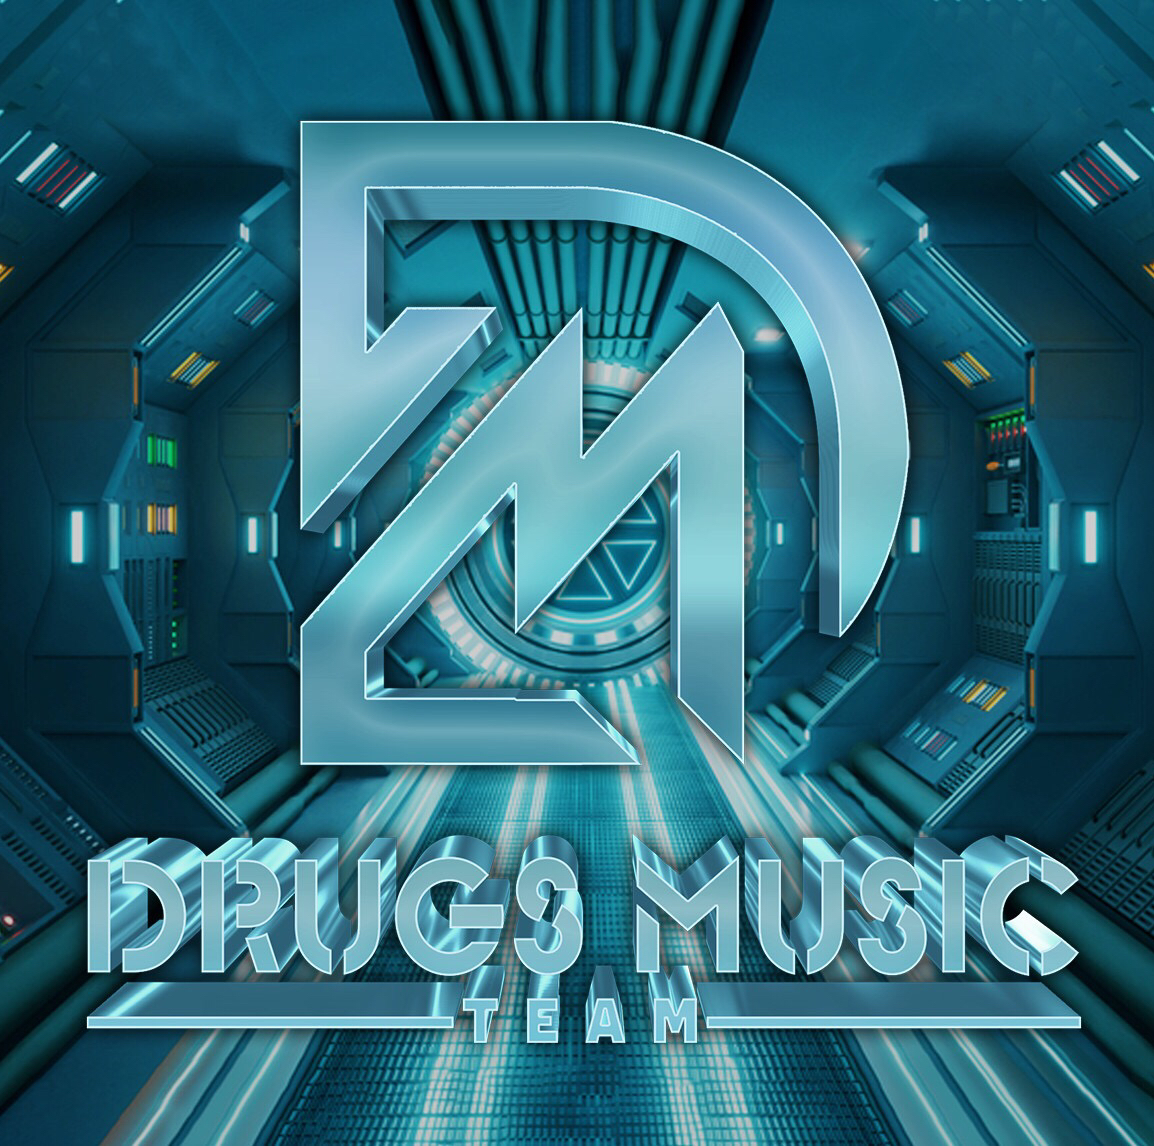 Deskargatu Bên Trên Tầng Lầu - Tài Dola x Tbynz (Drugs Music Team)